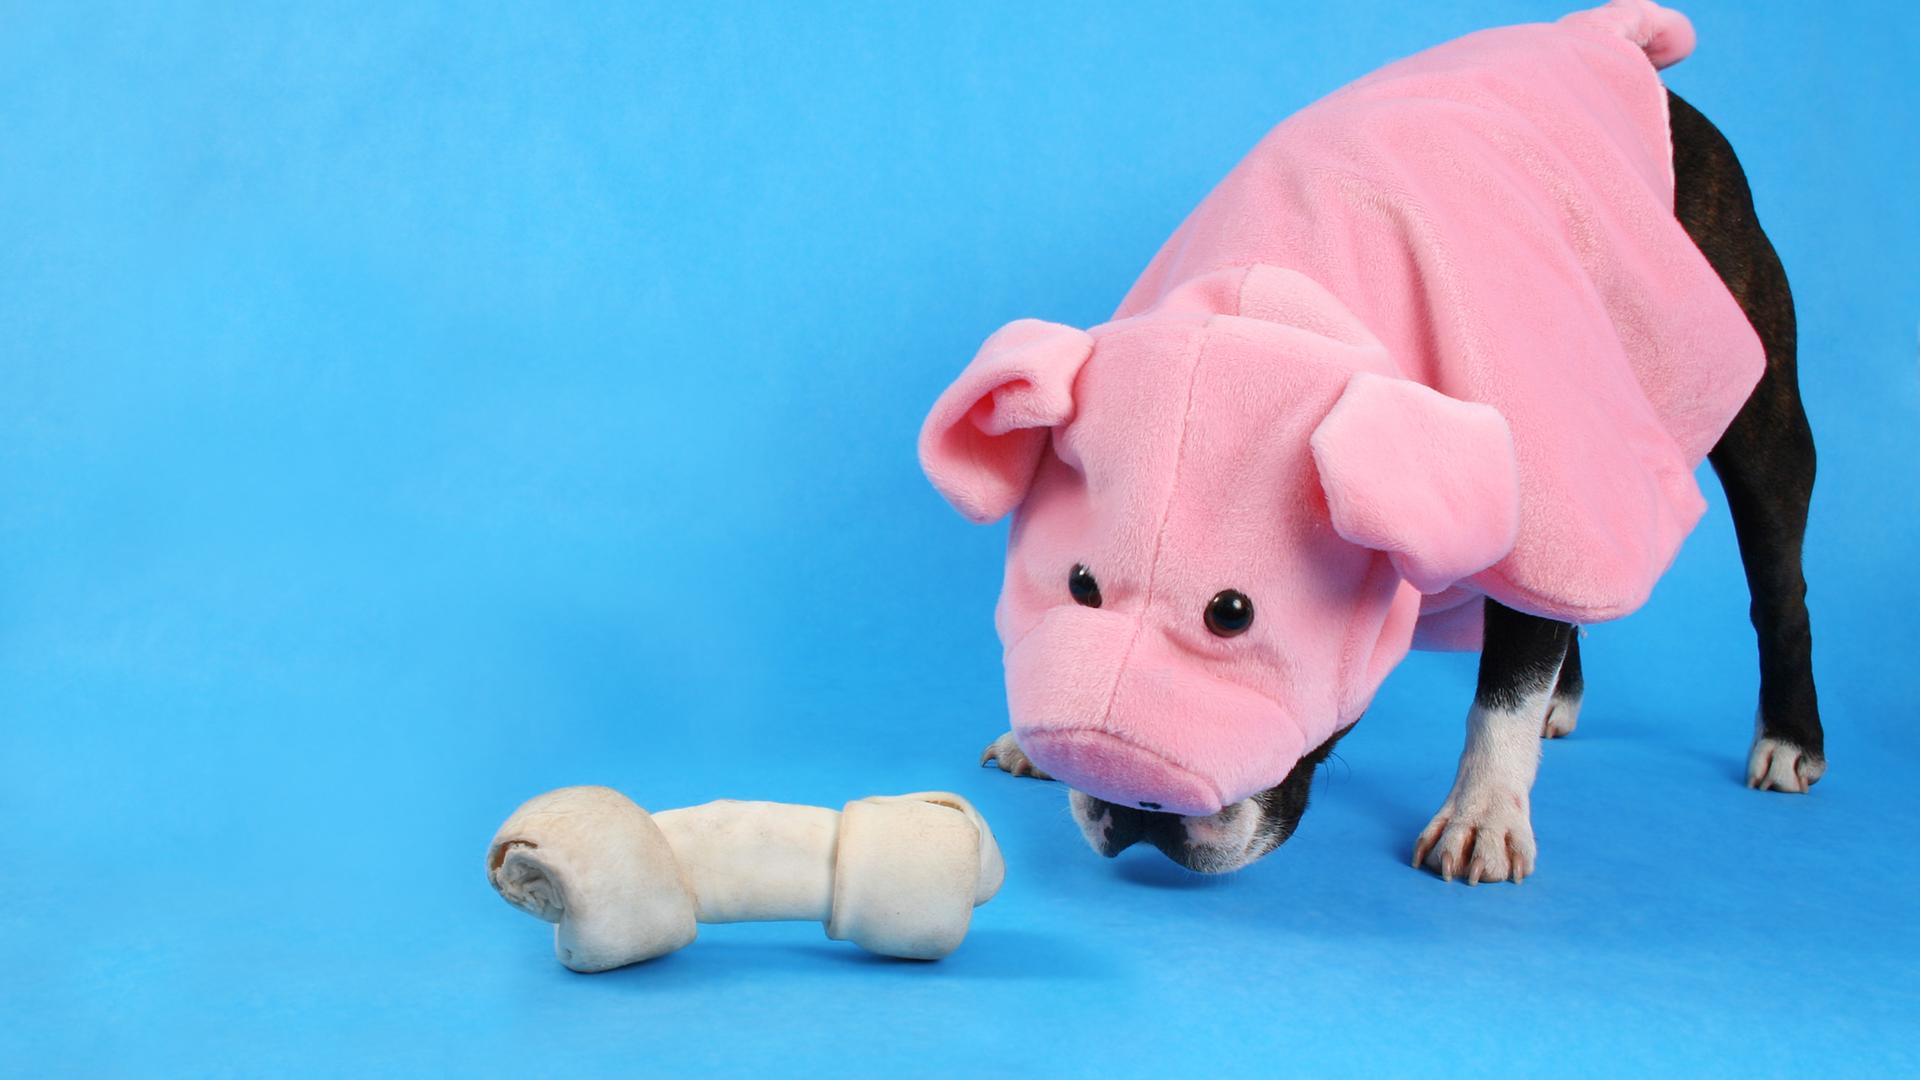 Ein kleiner Hund in einem Schweinekostüm schnuppert an einem Stoffknochen, der auf dem Boden liegt. Vom Hund sind nur die Beine und ein Stück der Schnauze zu sehen.